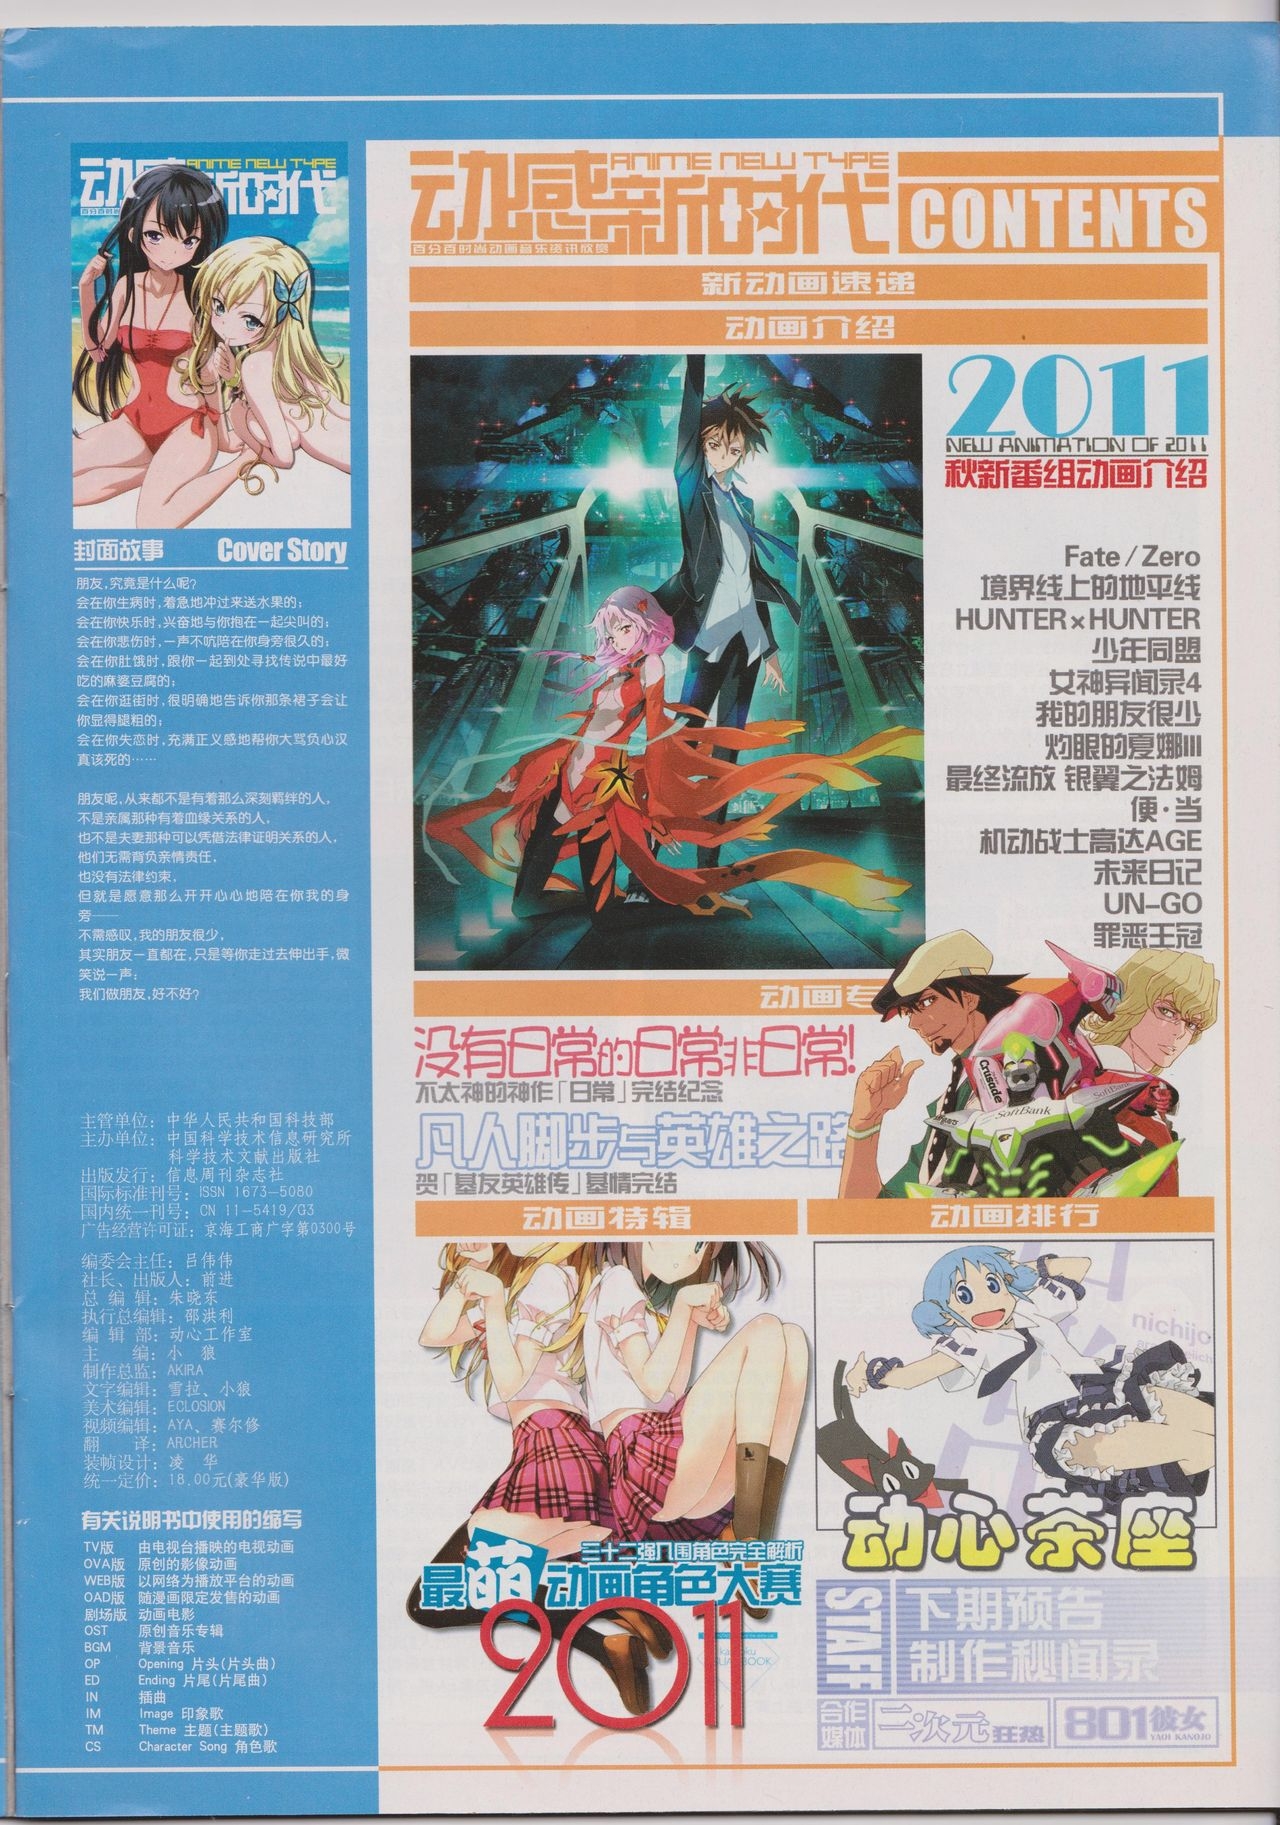 Anime New Type Vol.105 2